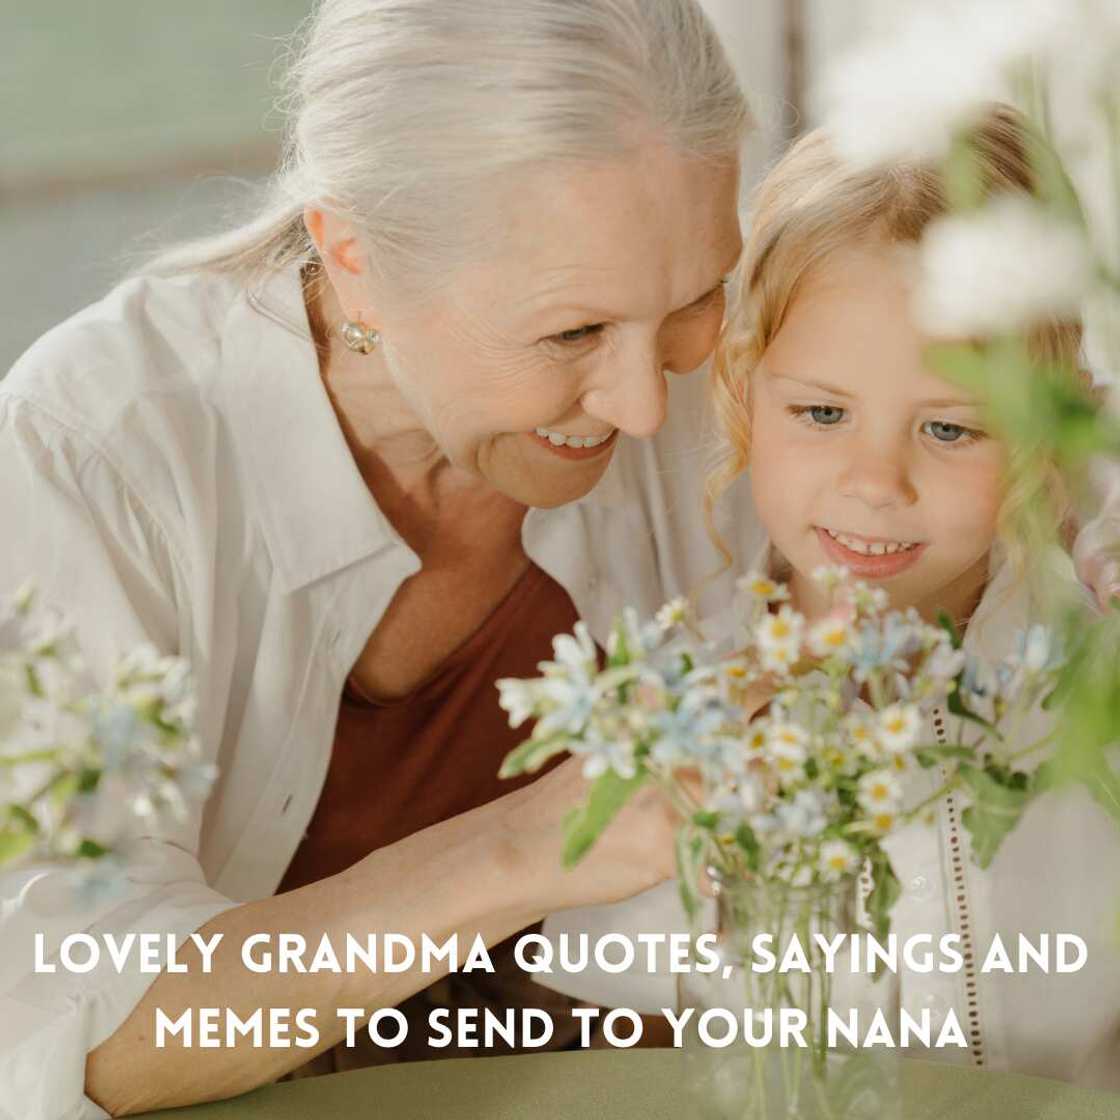 Grandma quotes